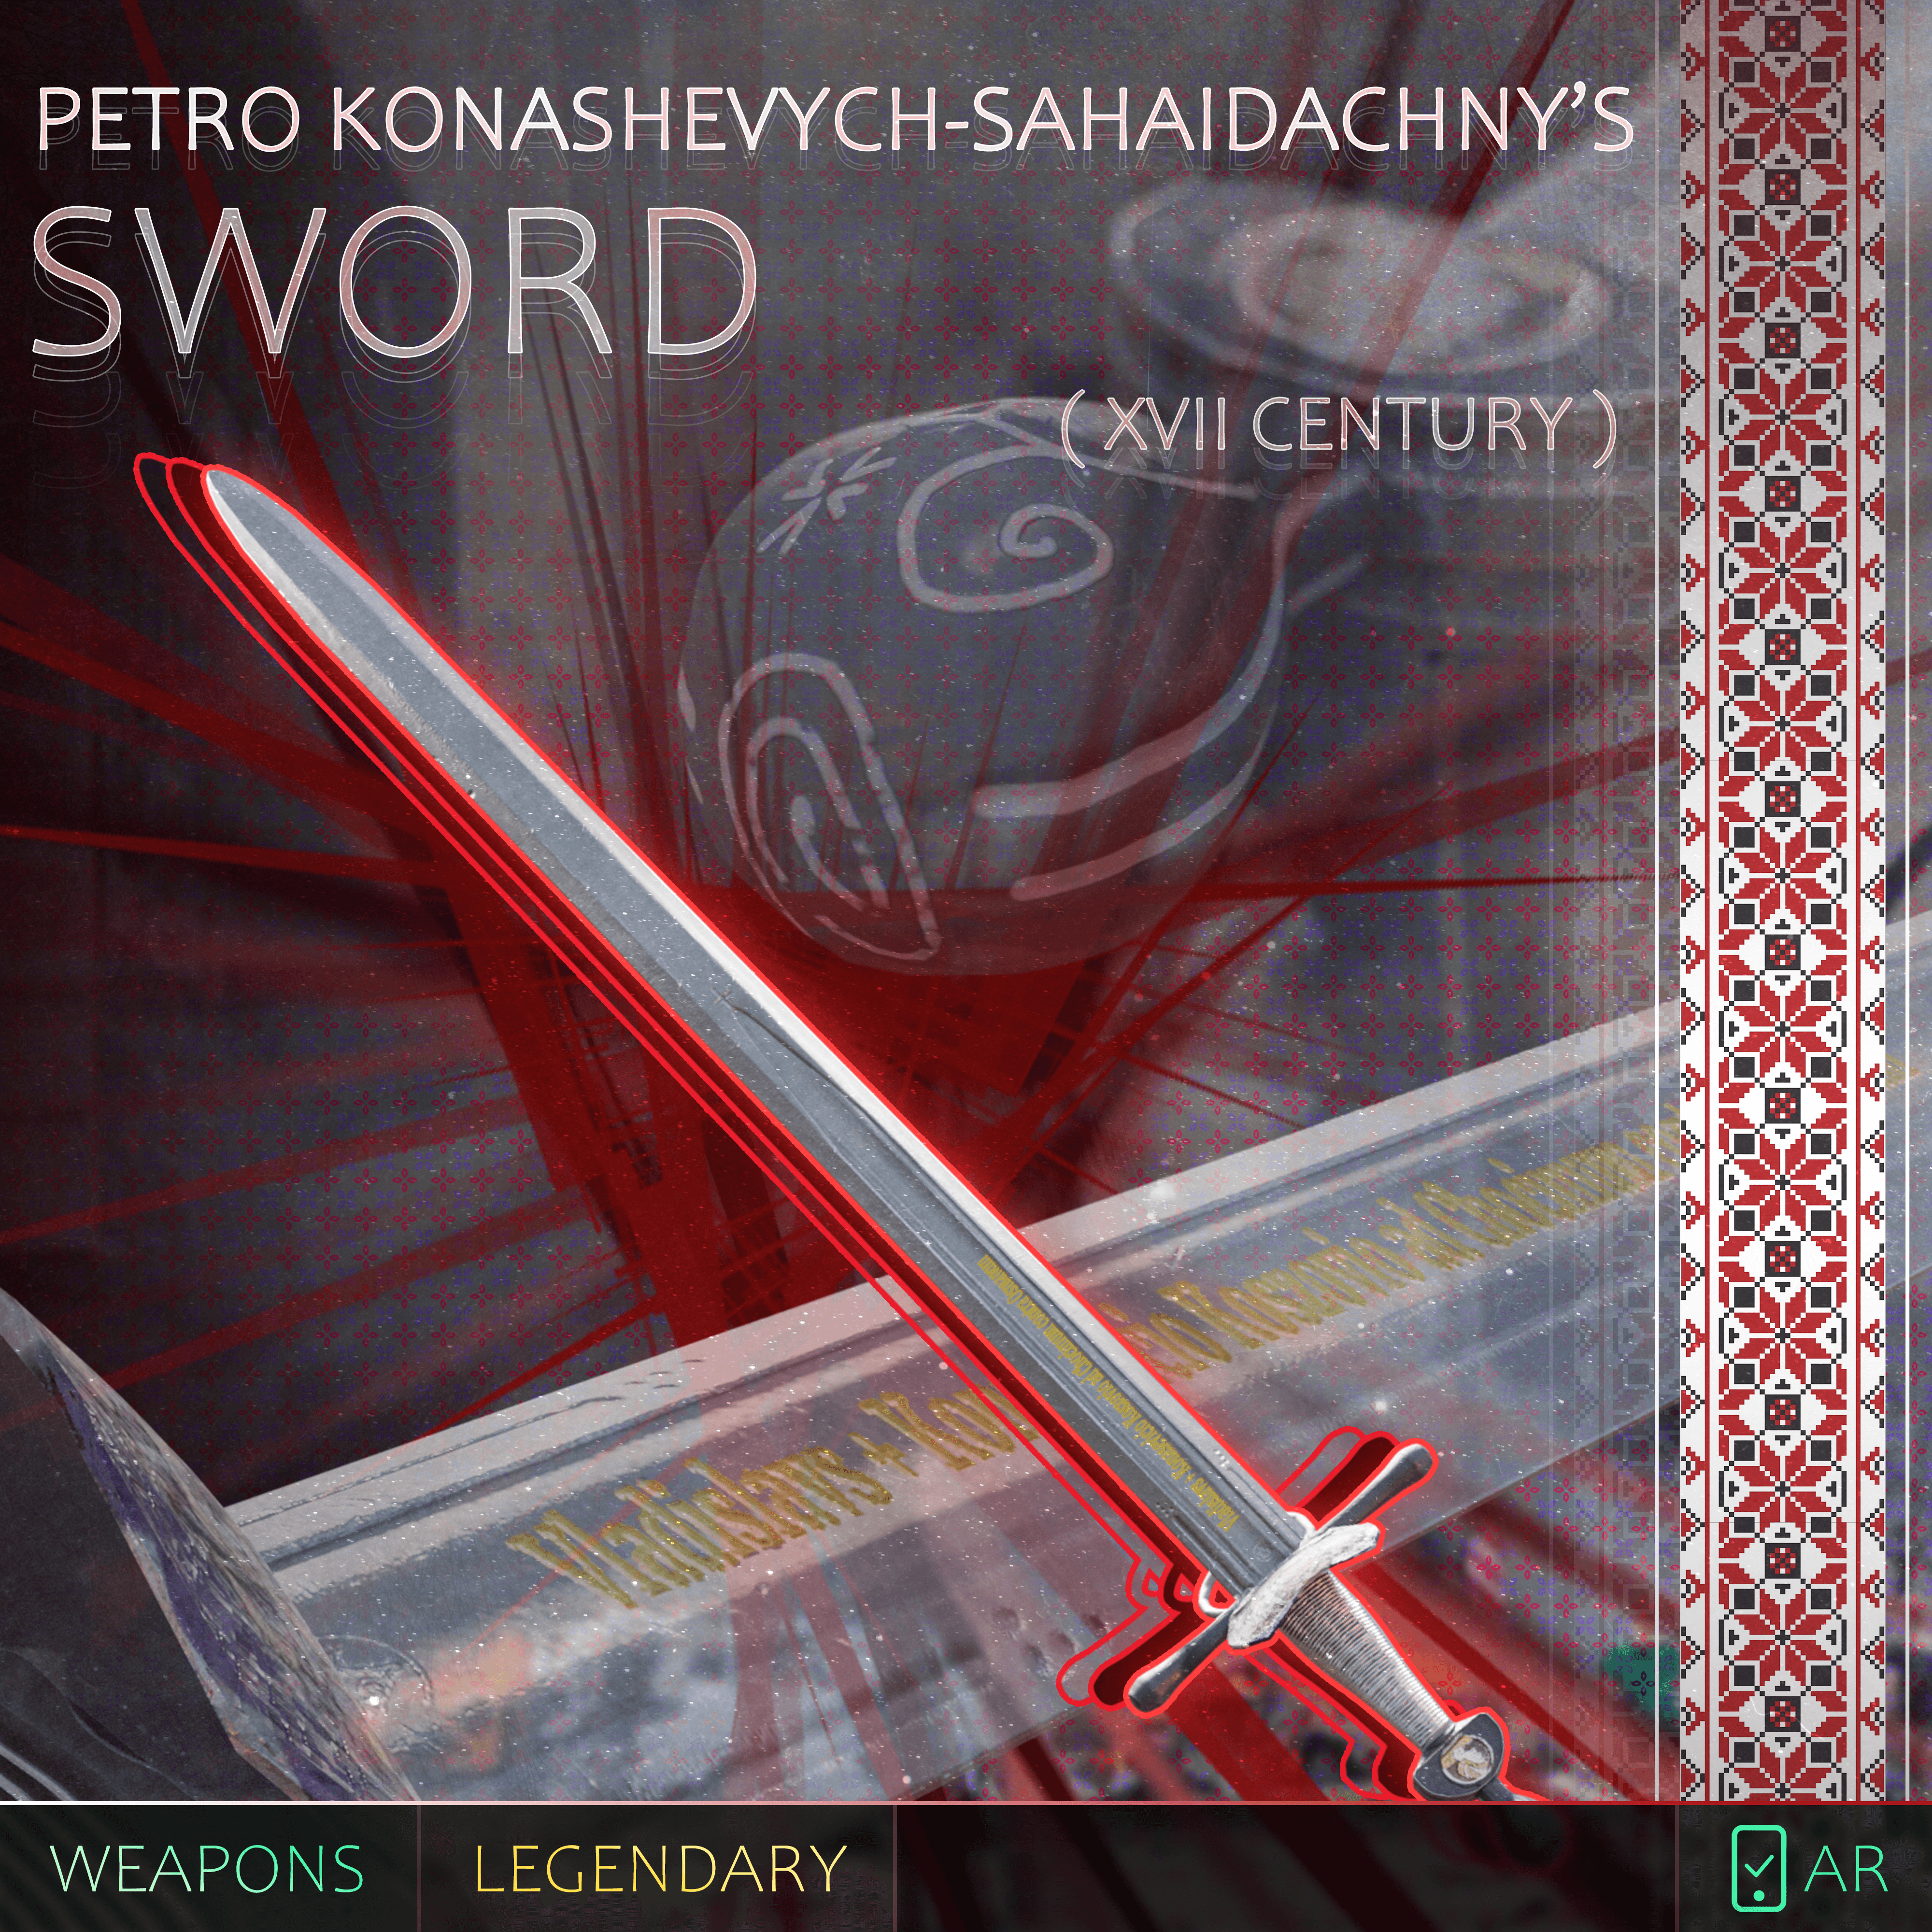 Sword of Konashevych-Sahaidachny